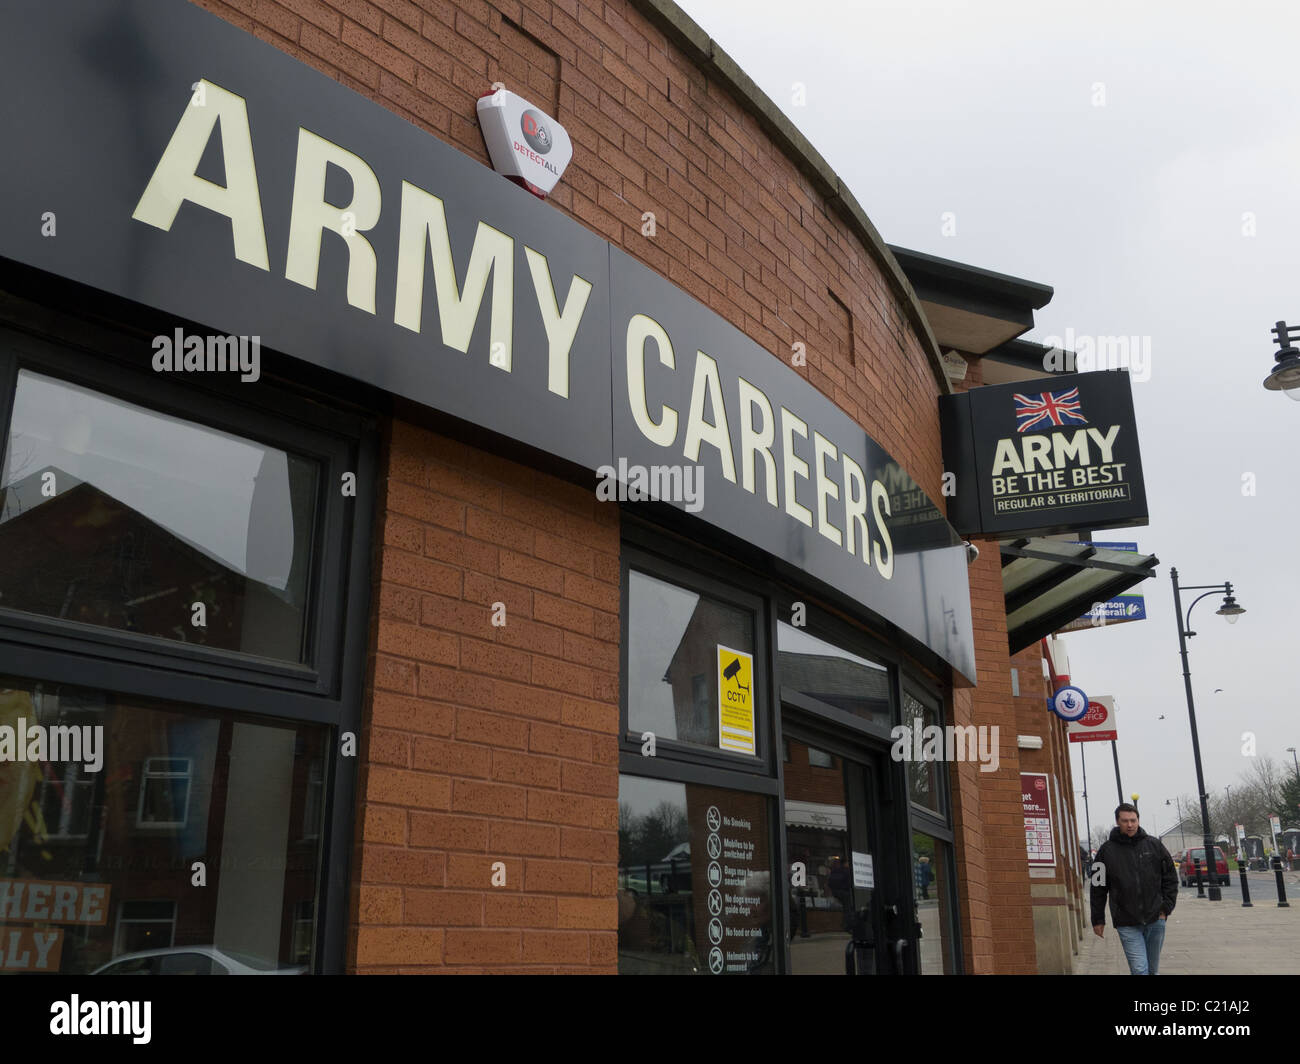 Centro de asesoramiento profesional del ejército, Oldham, Lancs Foto de stock